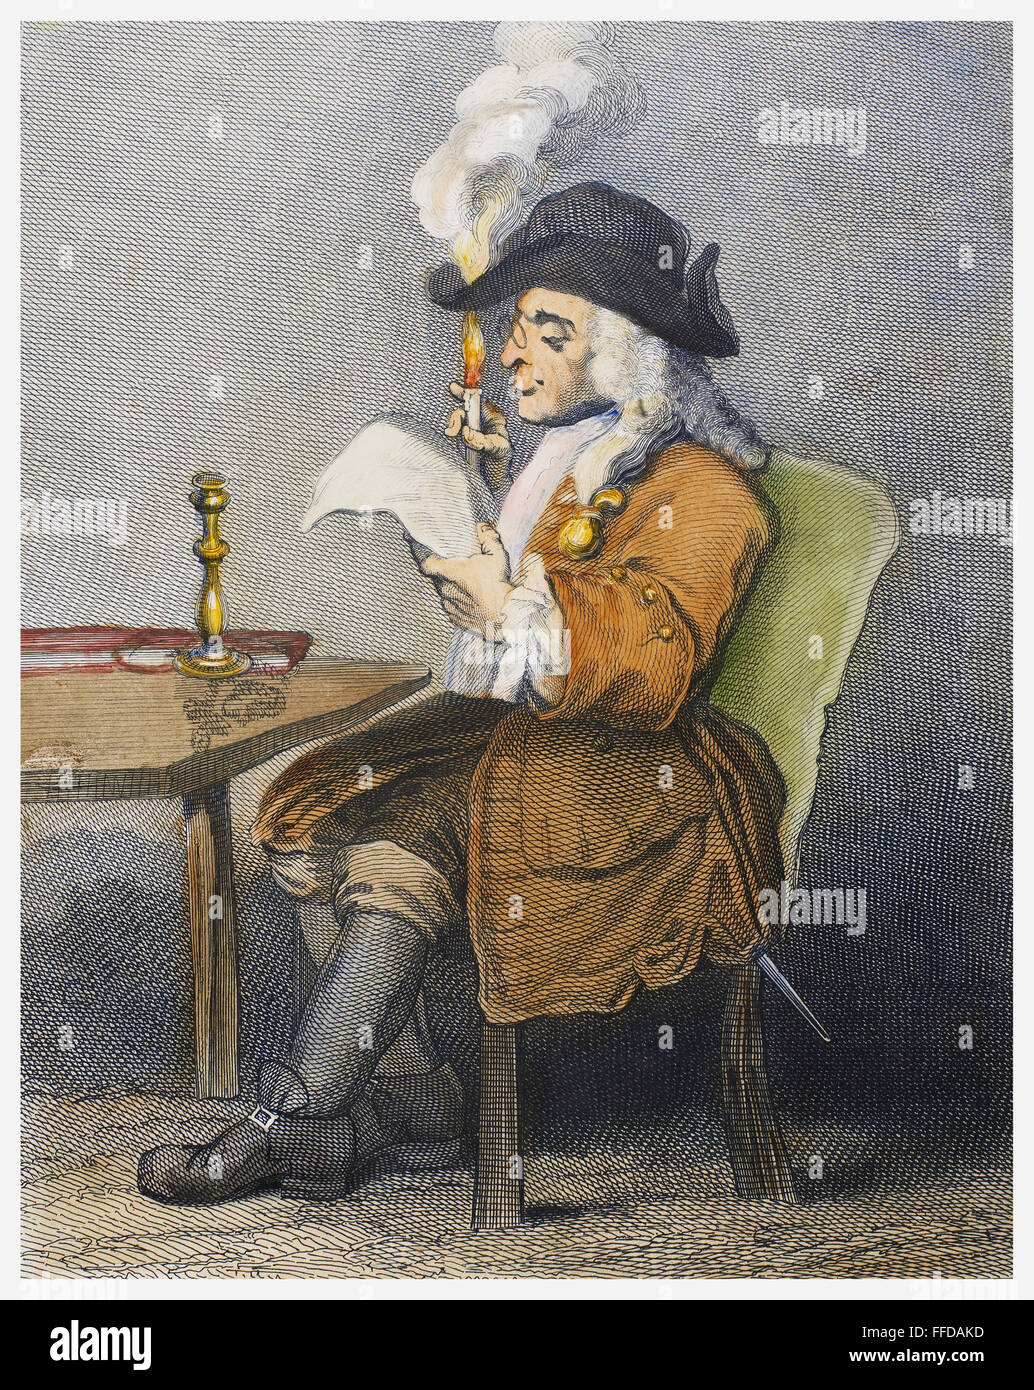 HOGARTH : homme politique. /N'Til politicien." gravure, c1850, après William Hogarth. Banque D'Images